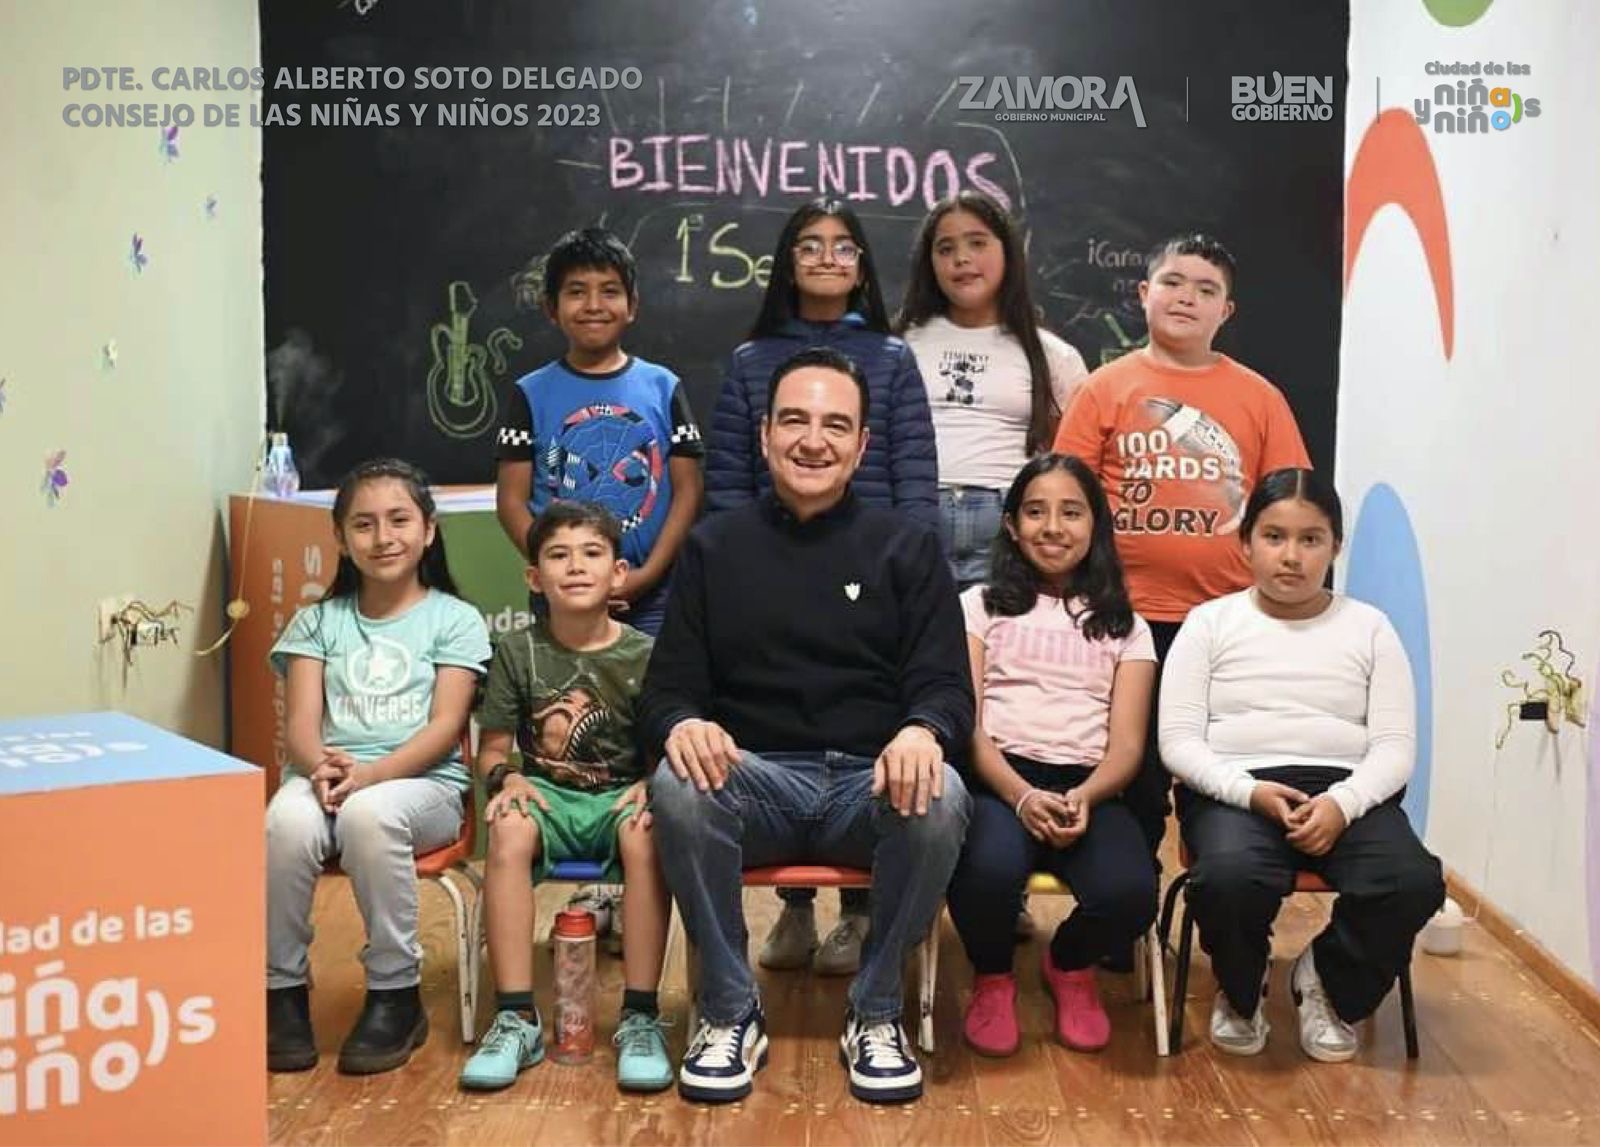 Denominación como “Ciudad de Niños y Niñas” hace referente a Zamora en el país